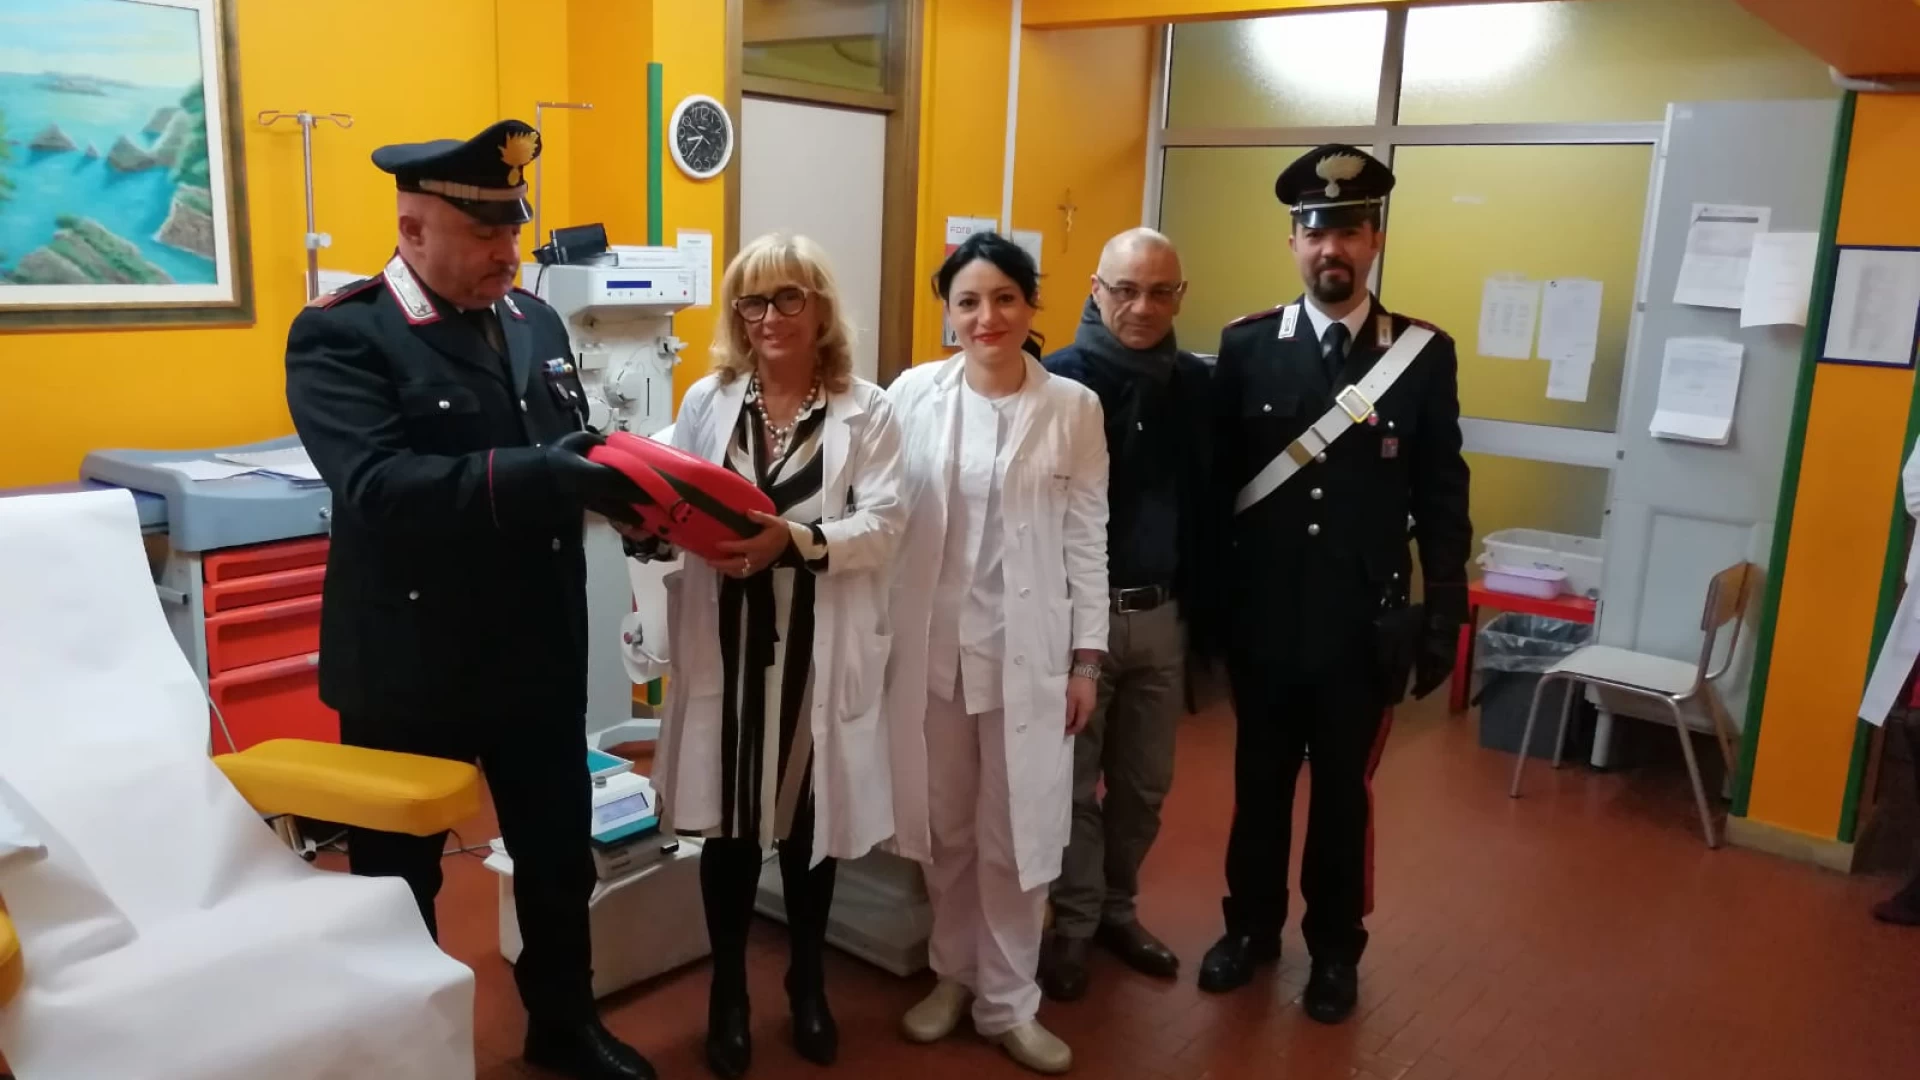 Isernia:  I Carabinieri di Isernia restituiscono il defibrillatore rubato  all’ospedale.